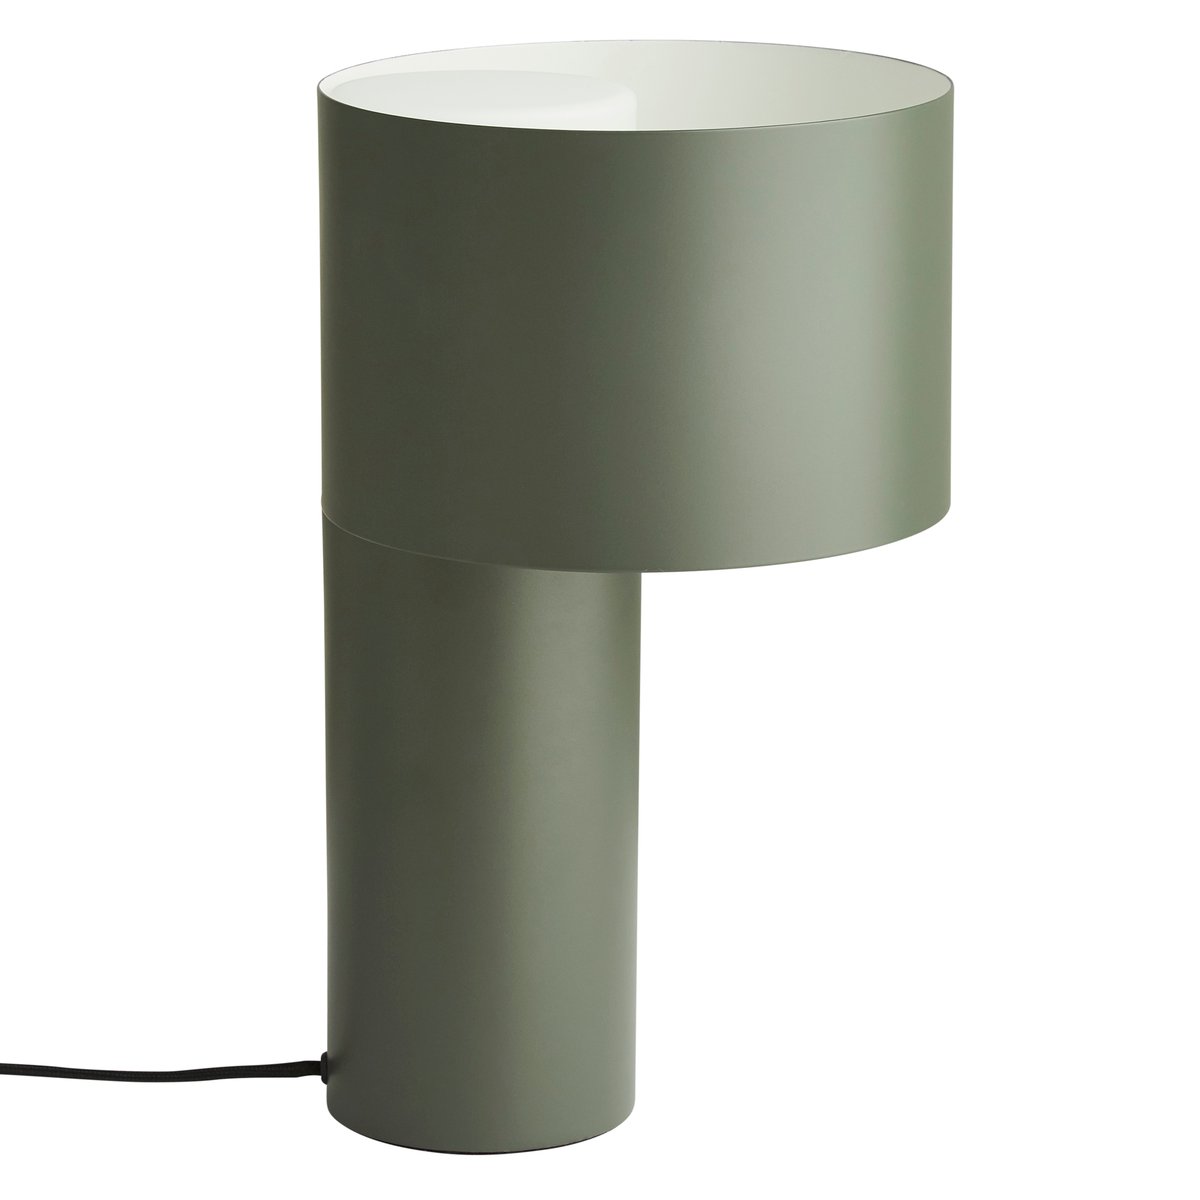 Bilde av Woud Tangent bordlampe grønn